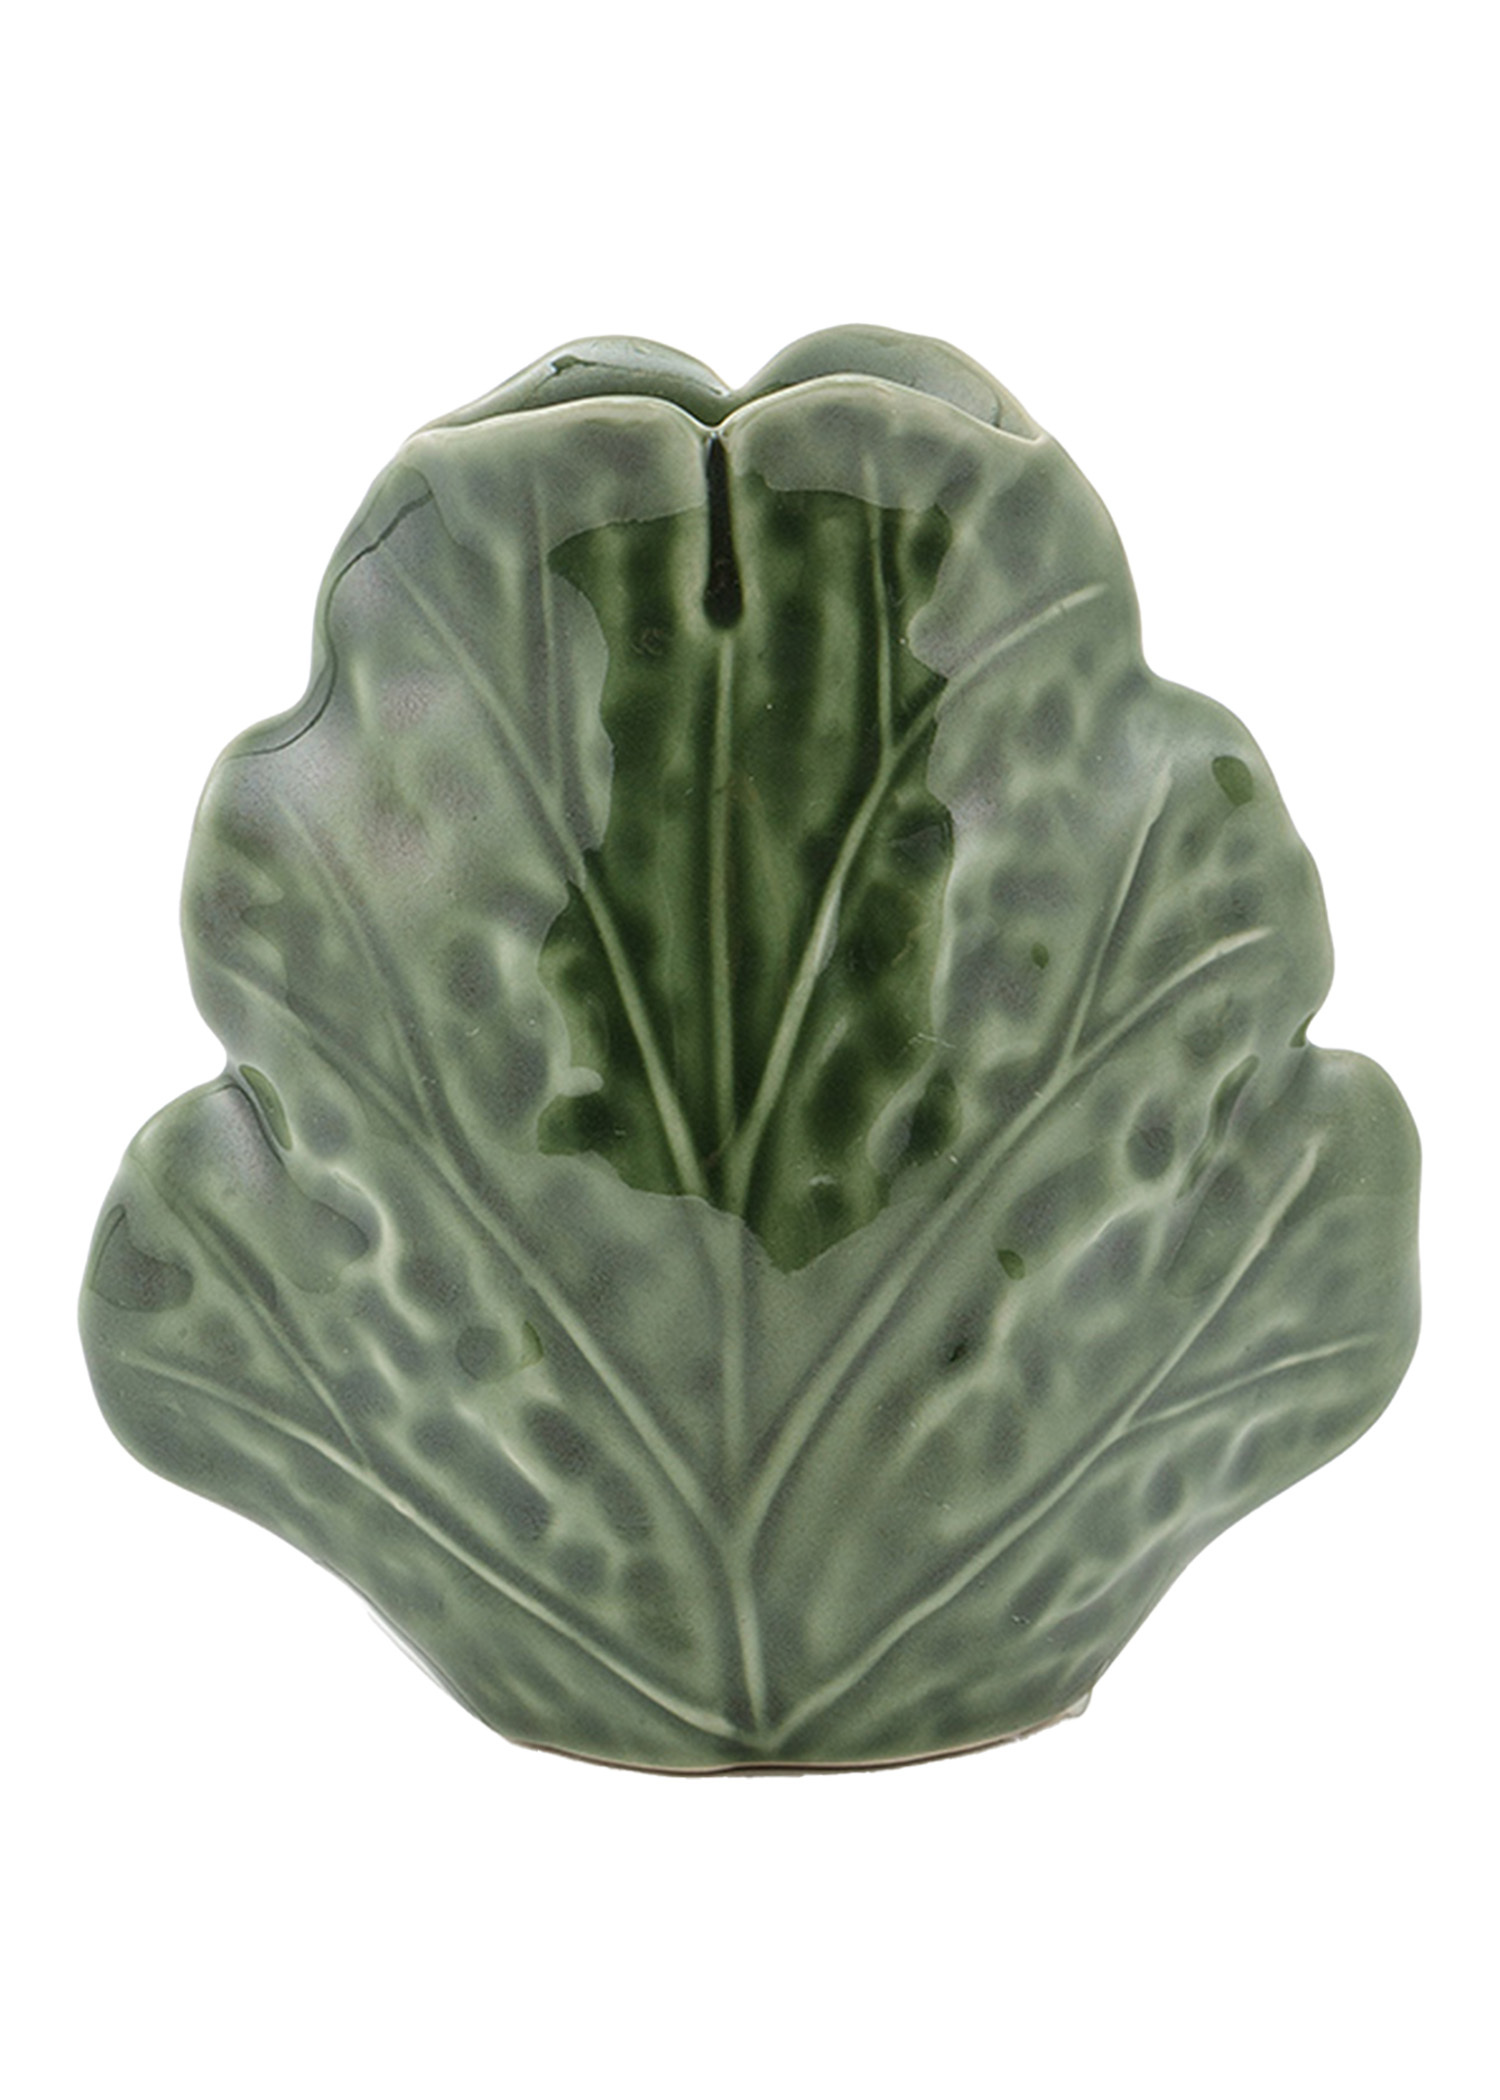 Stoneware cabbage vase Image 0